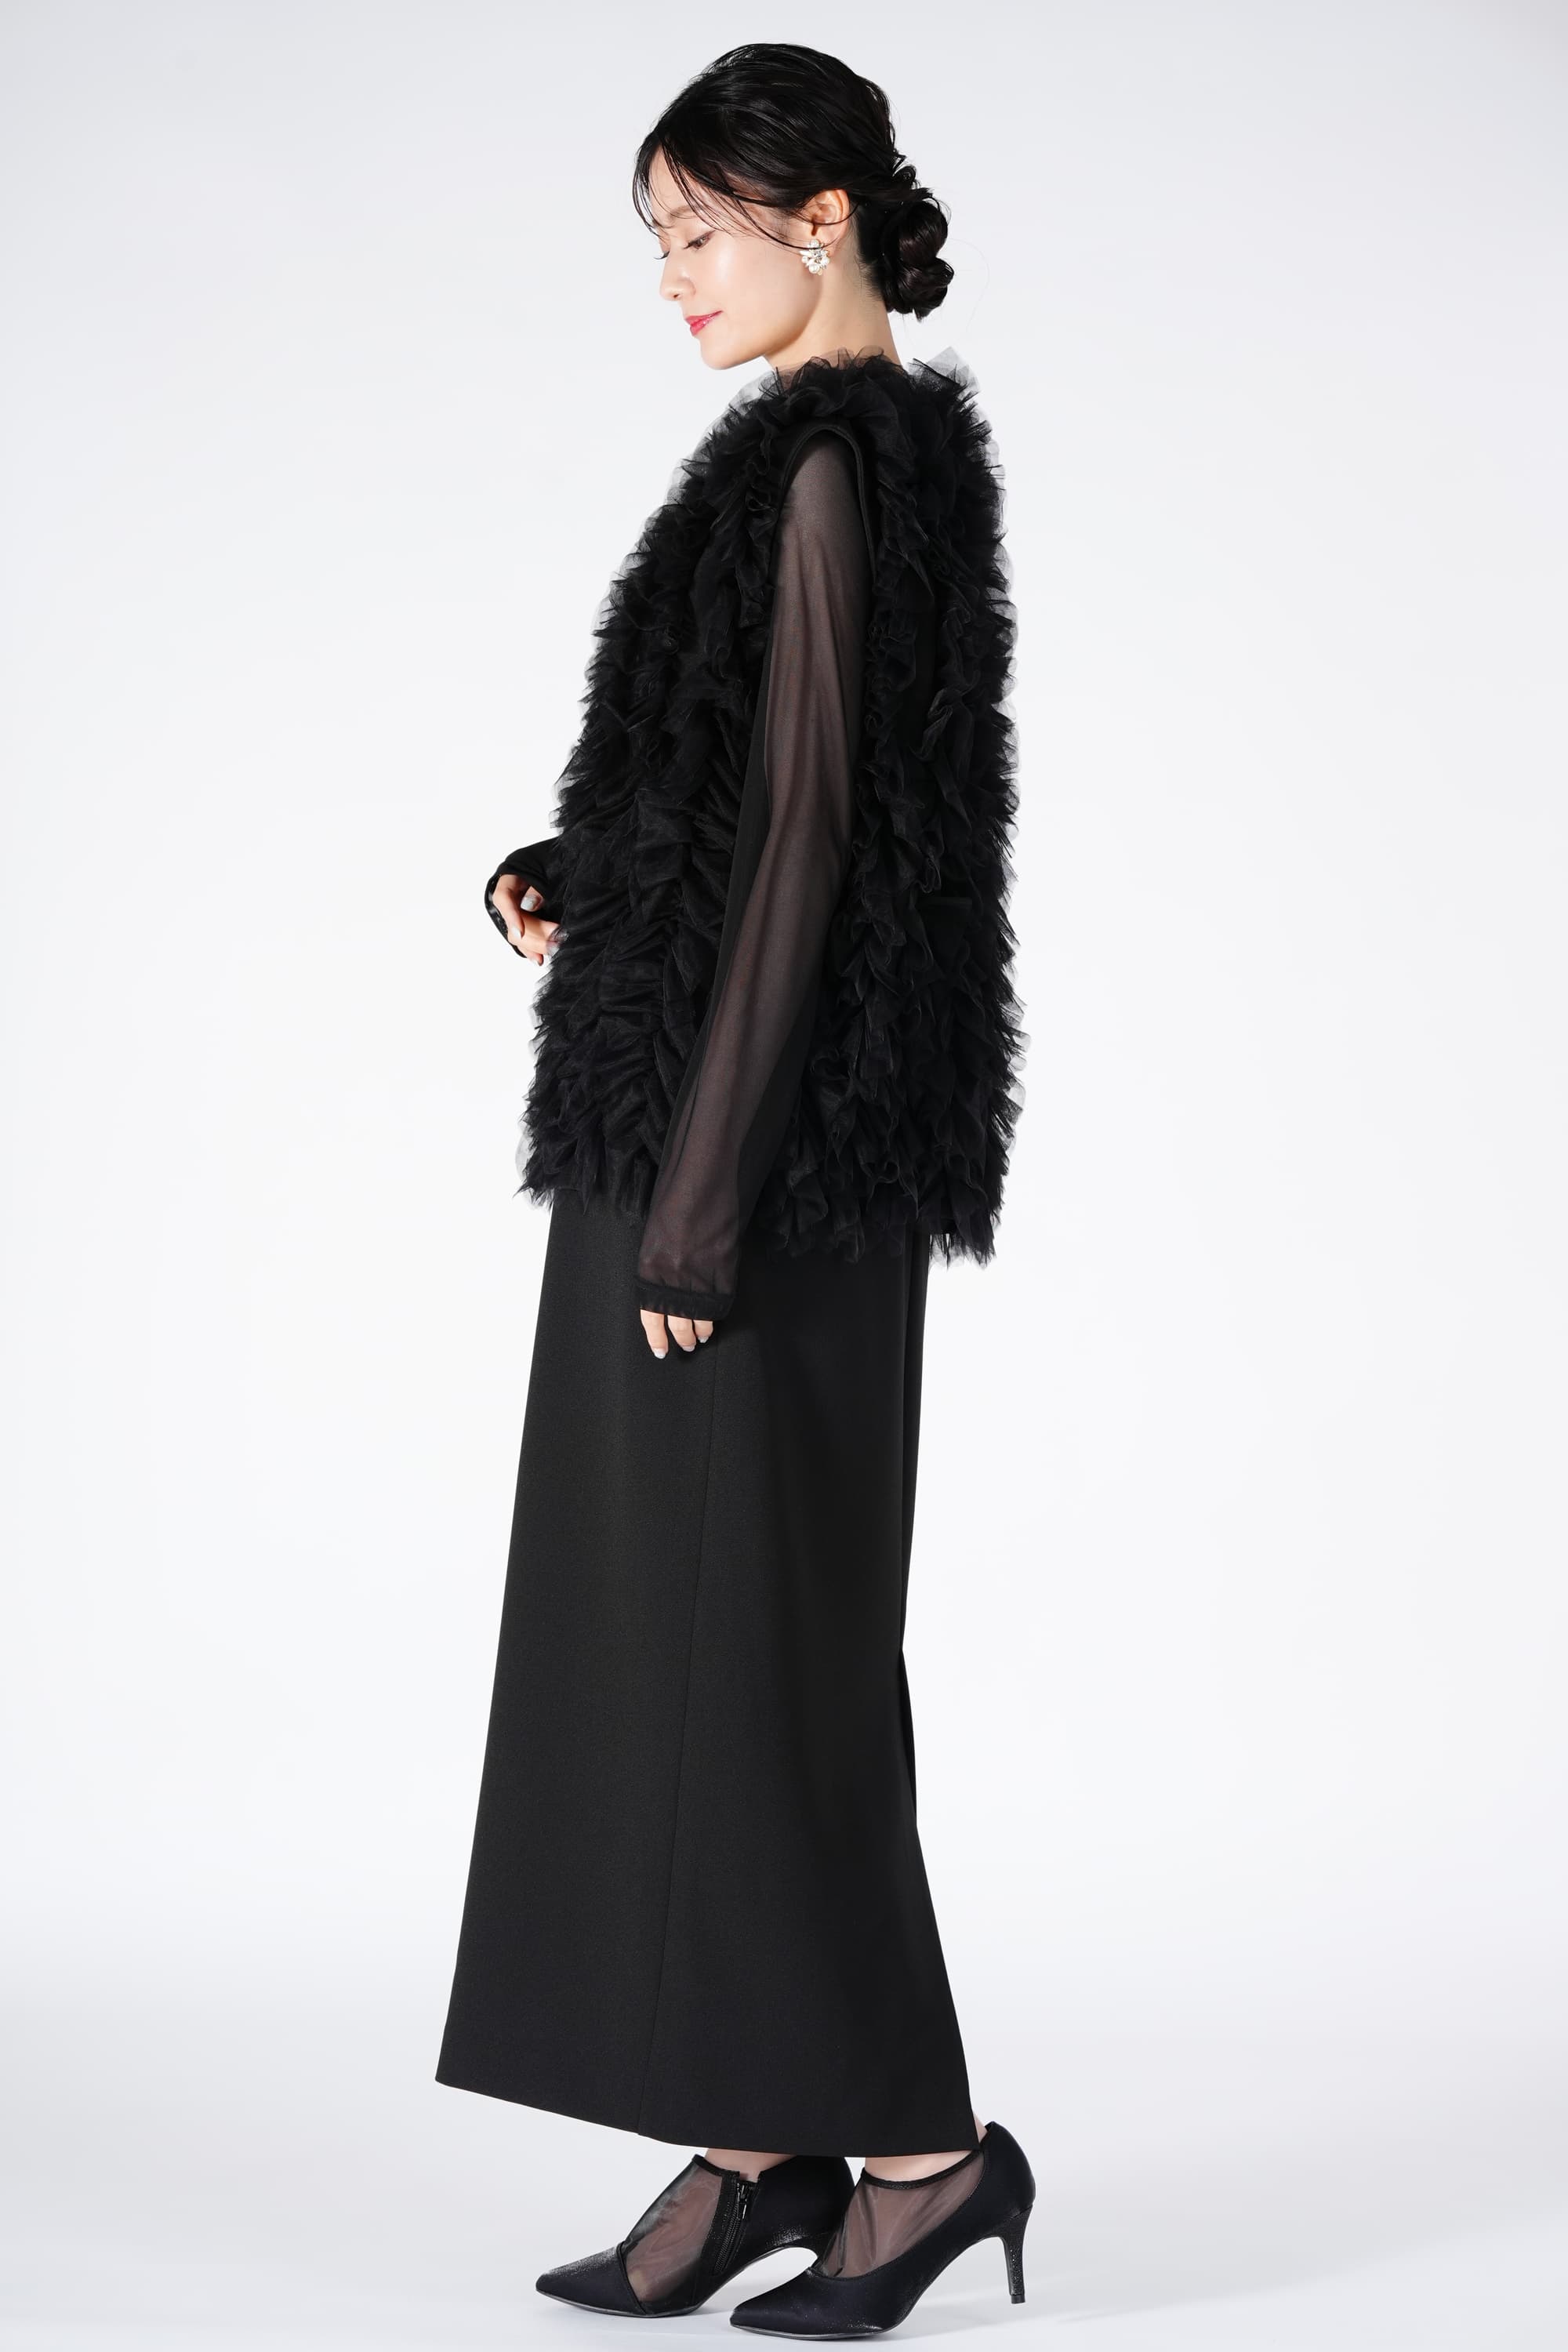 Ameri VINTAGE チュールベスト付きブラックドレス (S) をレンタル